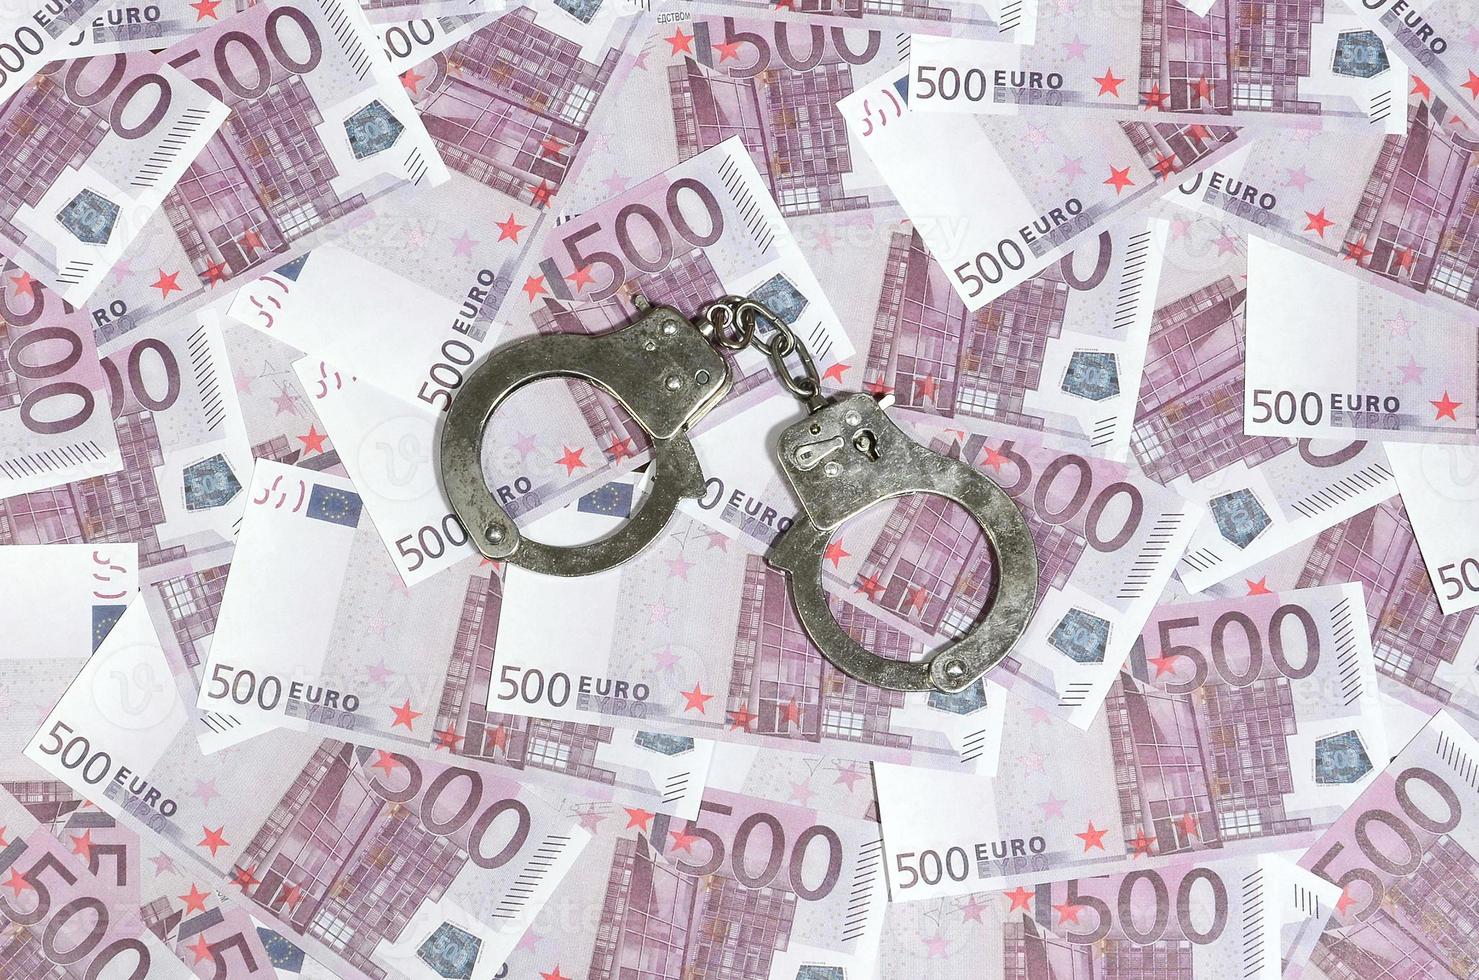 Handschellen auf fünfhundert Euro Hintergrund. Finanzkriminalität, schmutziges Geld und Korruptionskonzept - 500 Geldscheine und schmutzige Stahlhandschellen foto